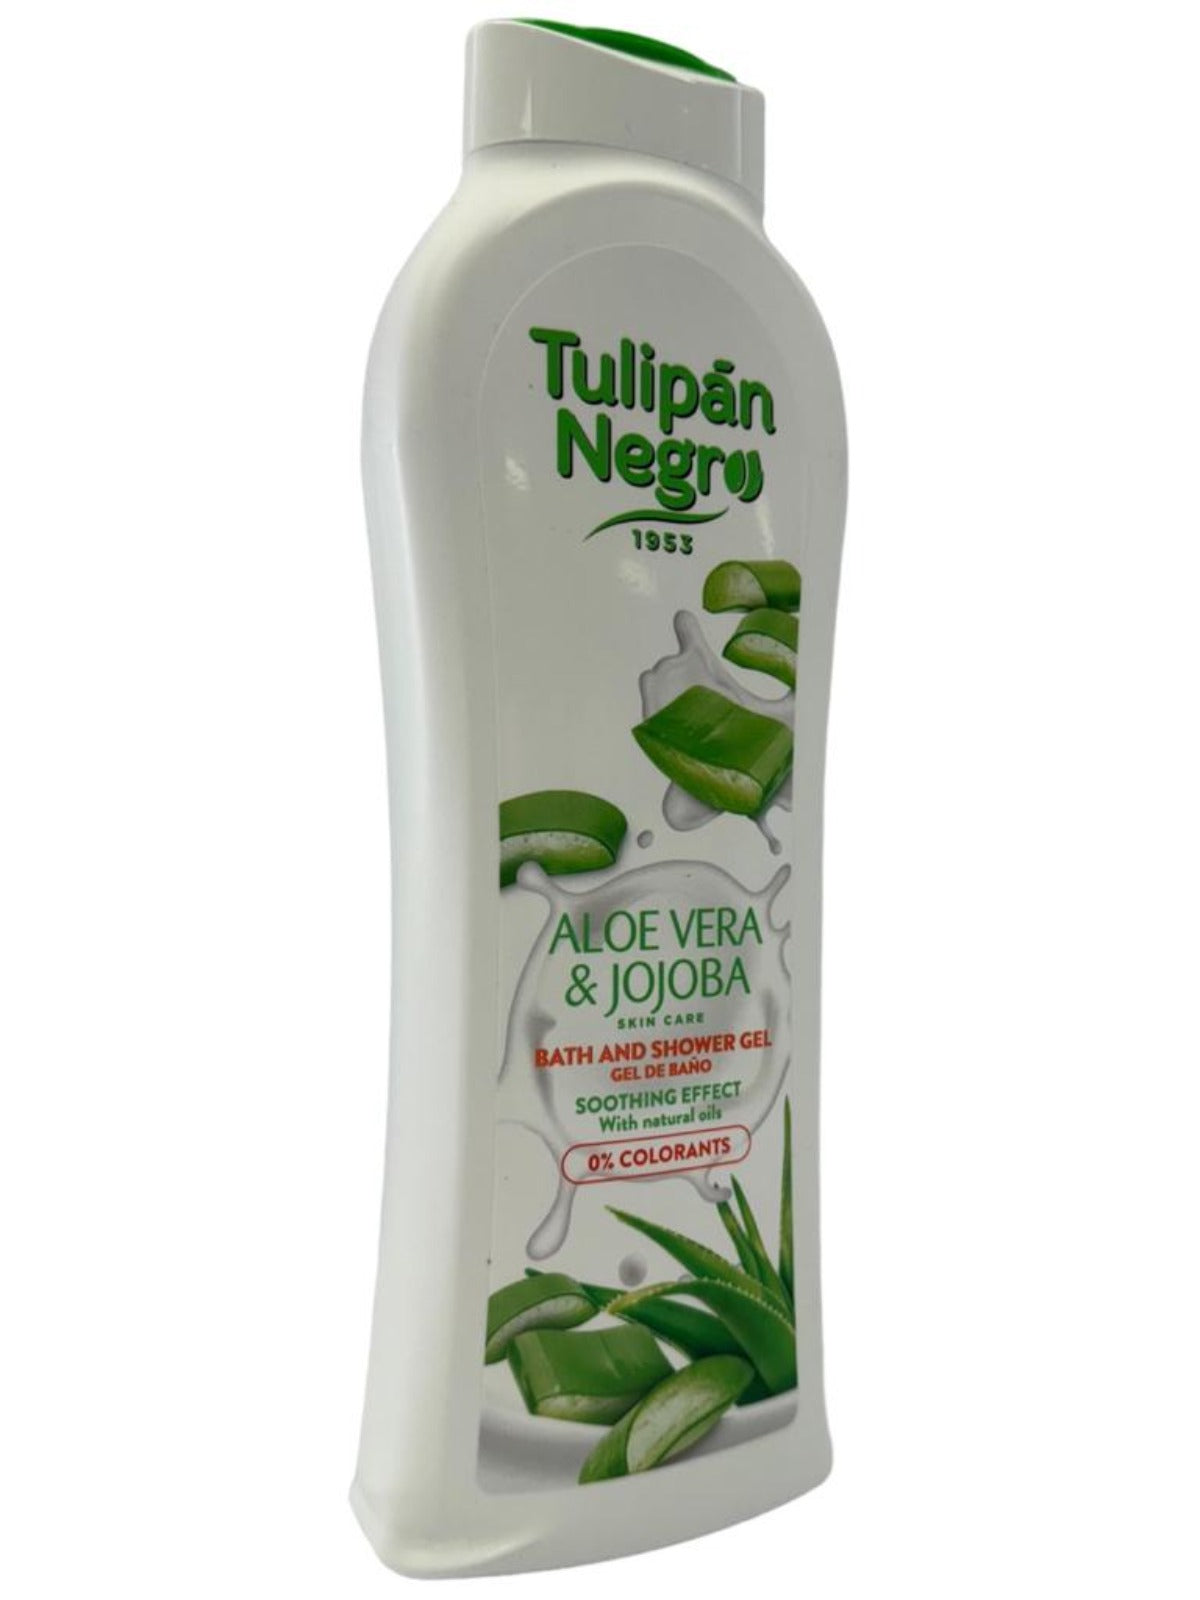 Tulipan Negro Aloe Vera & Jojoba Spanish Bath And Shower Gel 650ml